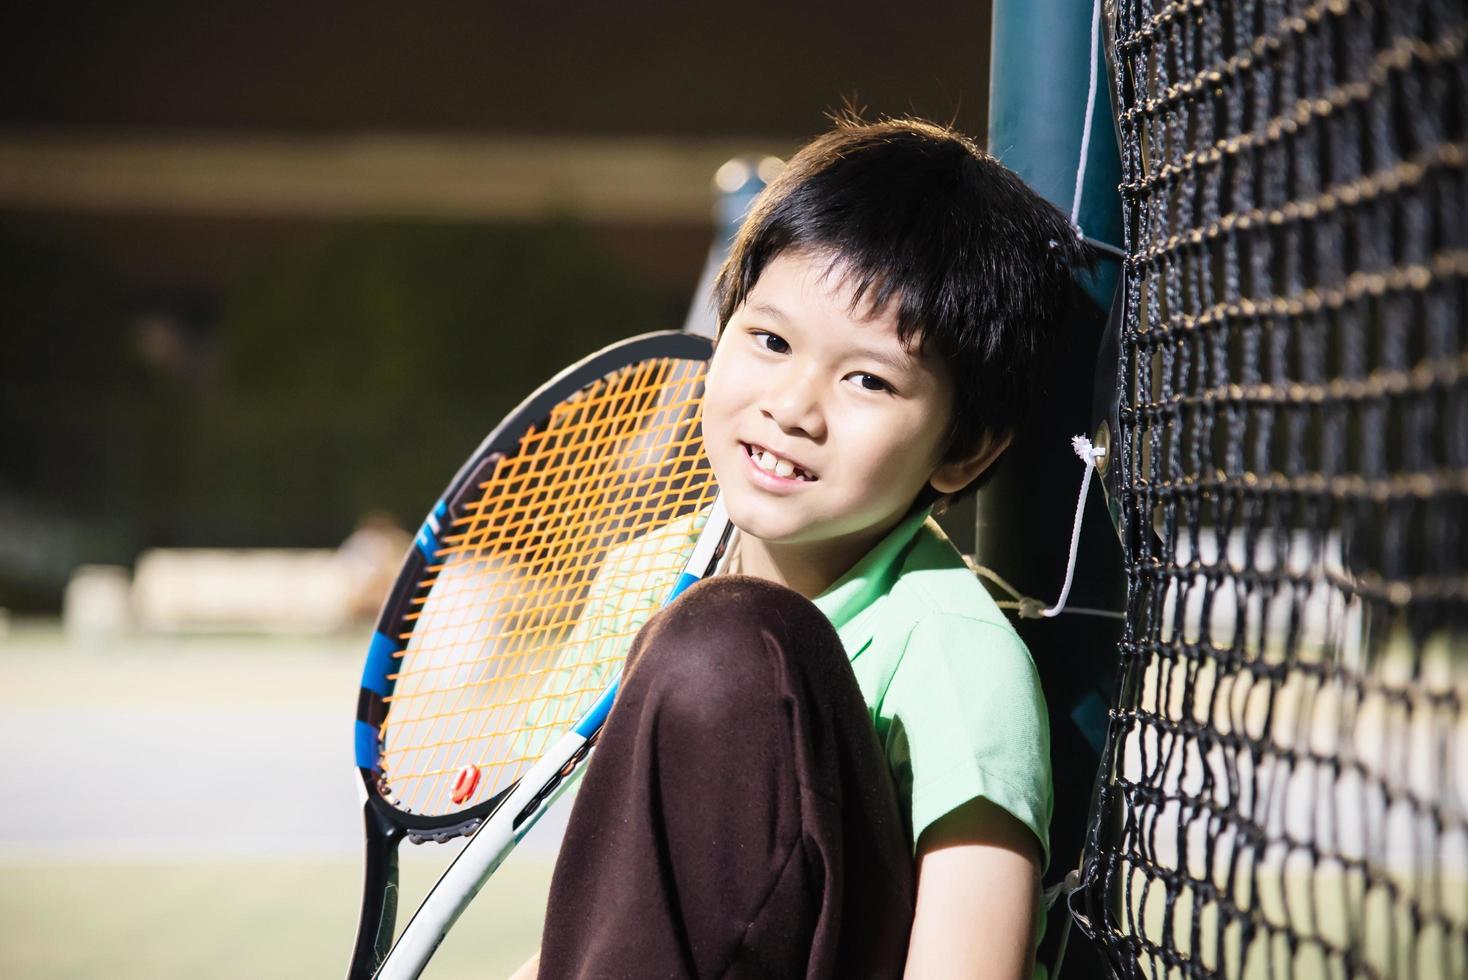 menino feliz na quadra de tênis durante seu tempo de prática esportiva - esporte de tênis com conceito de pessoas foto